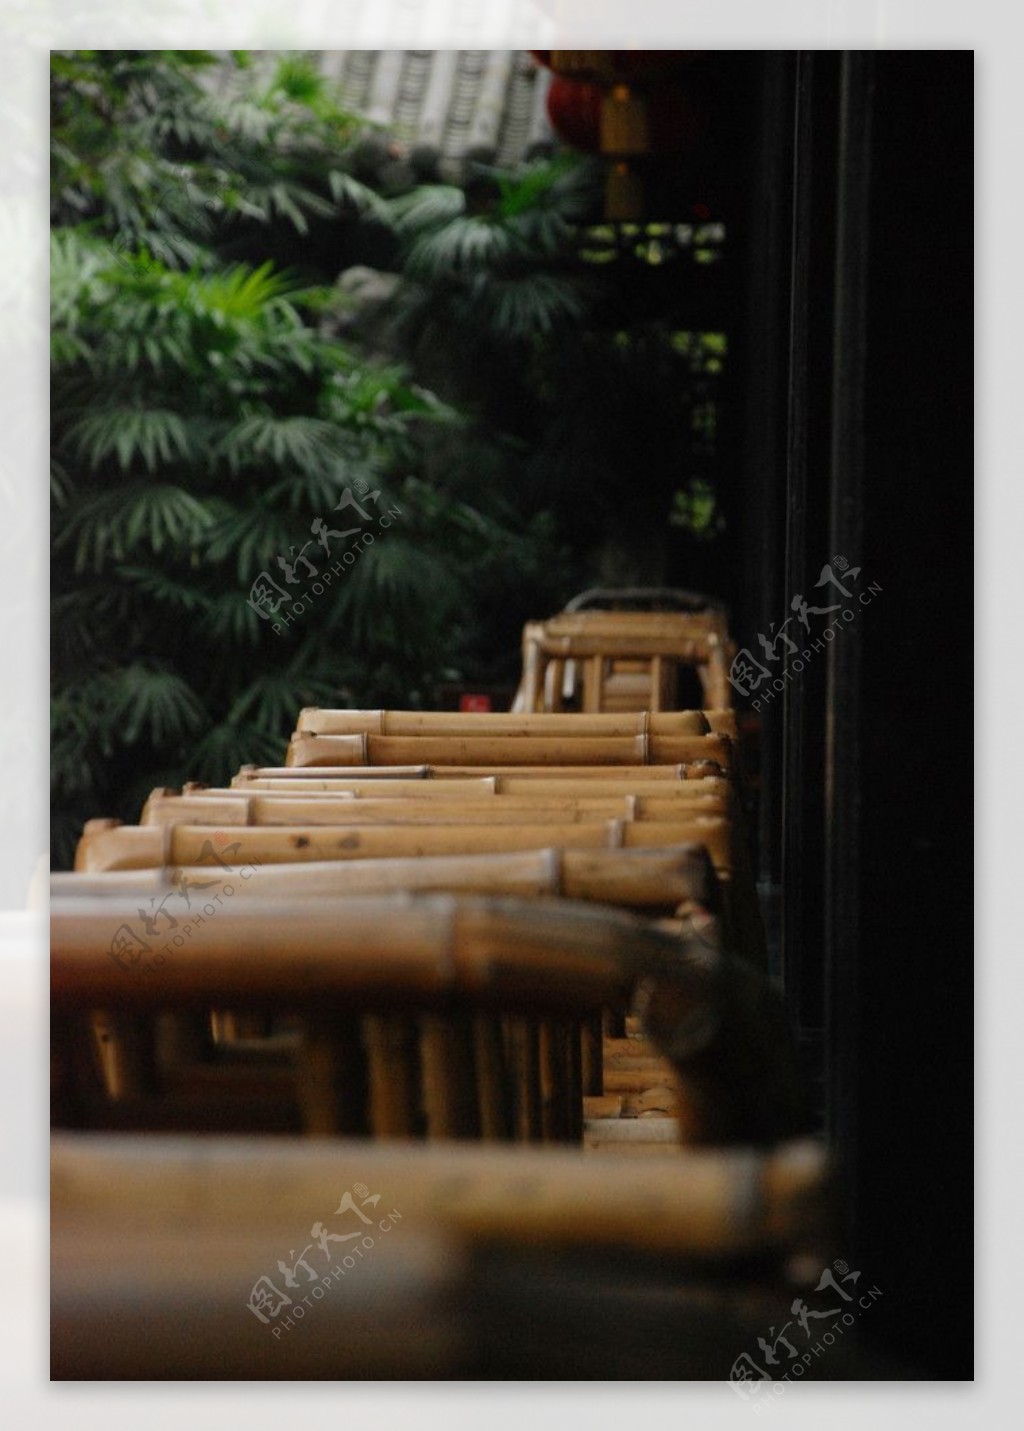 竹椅图片